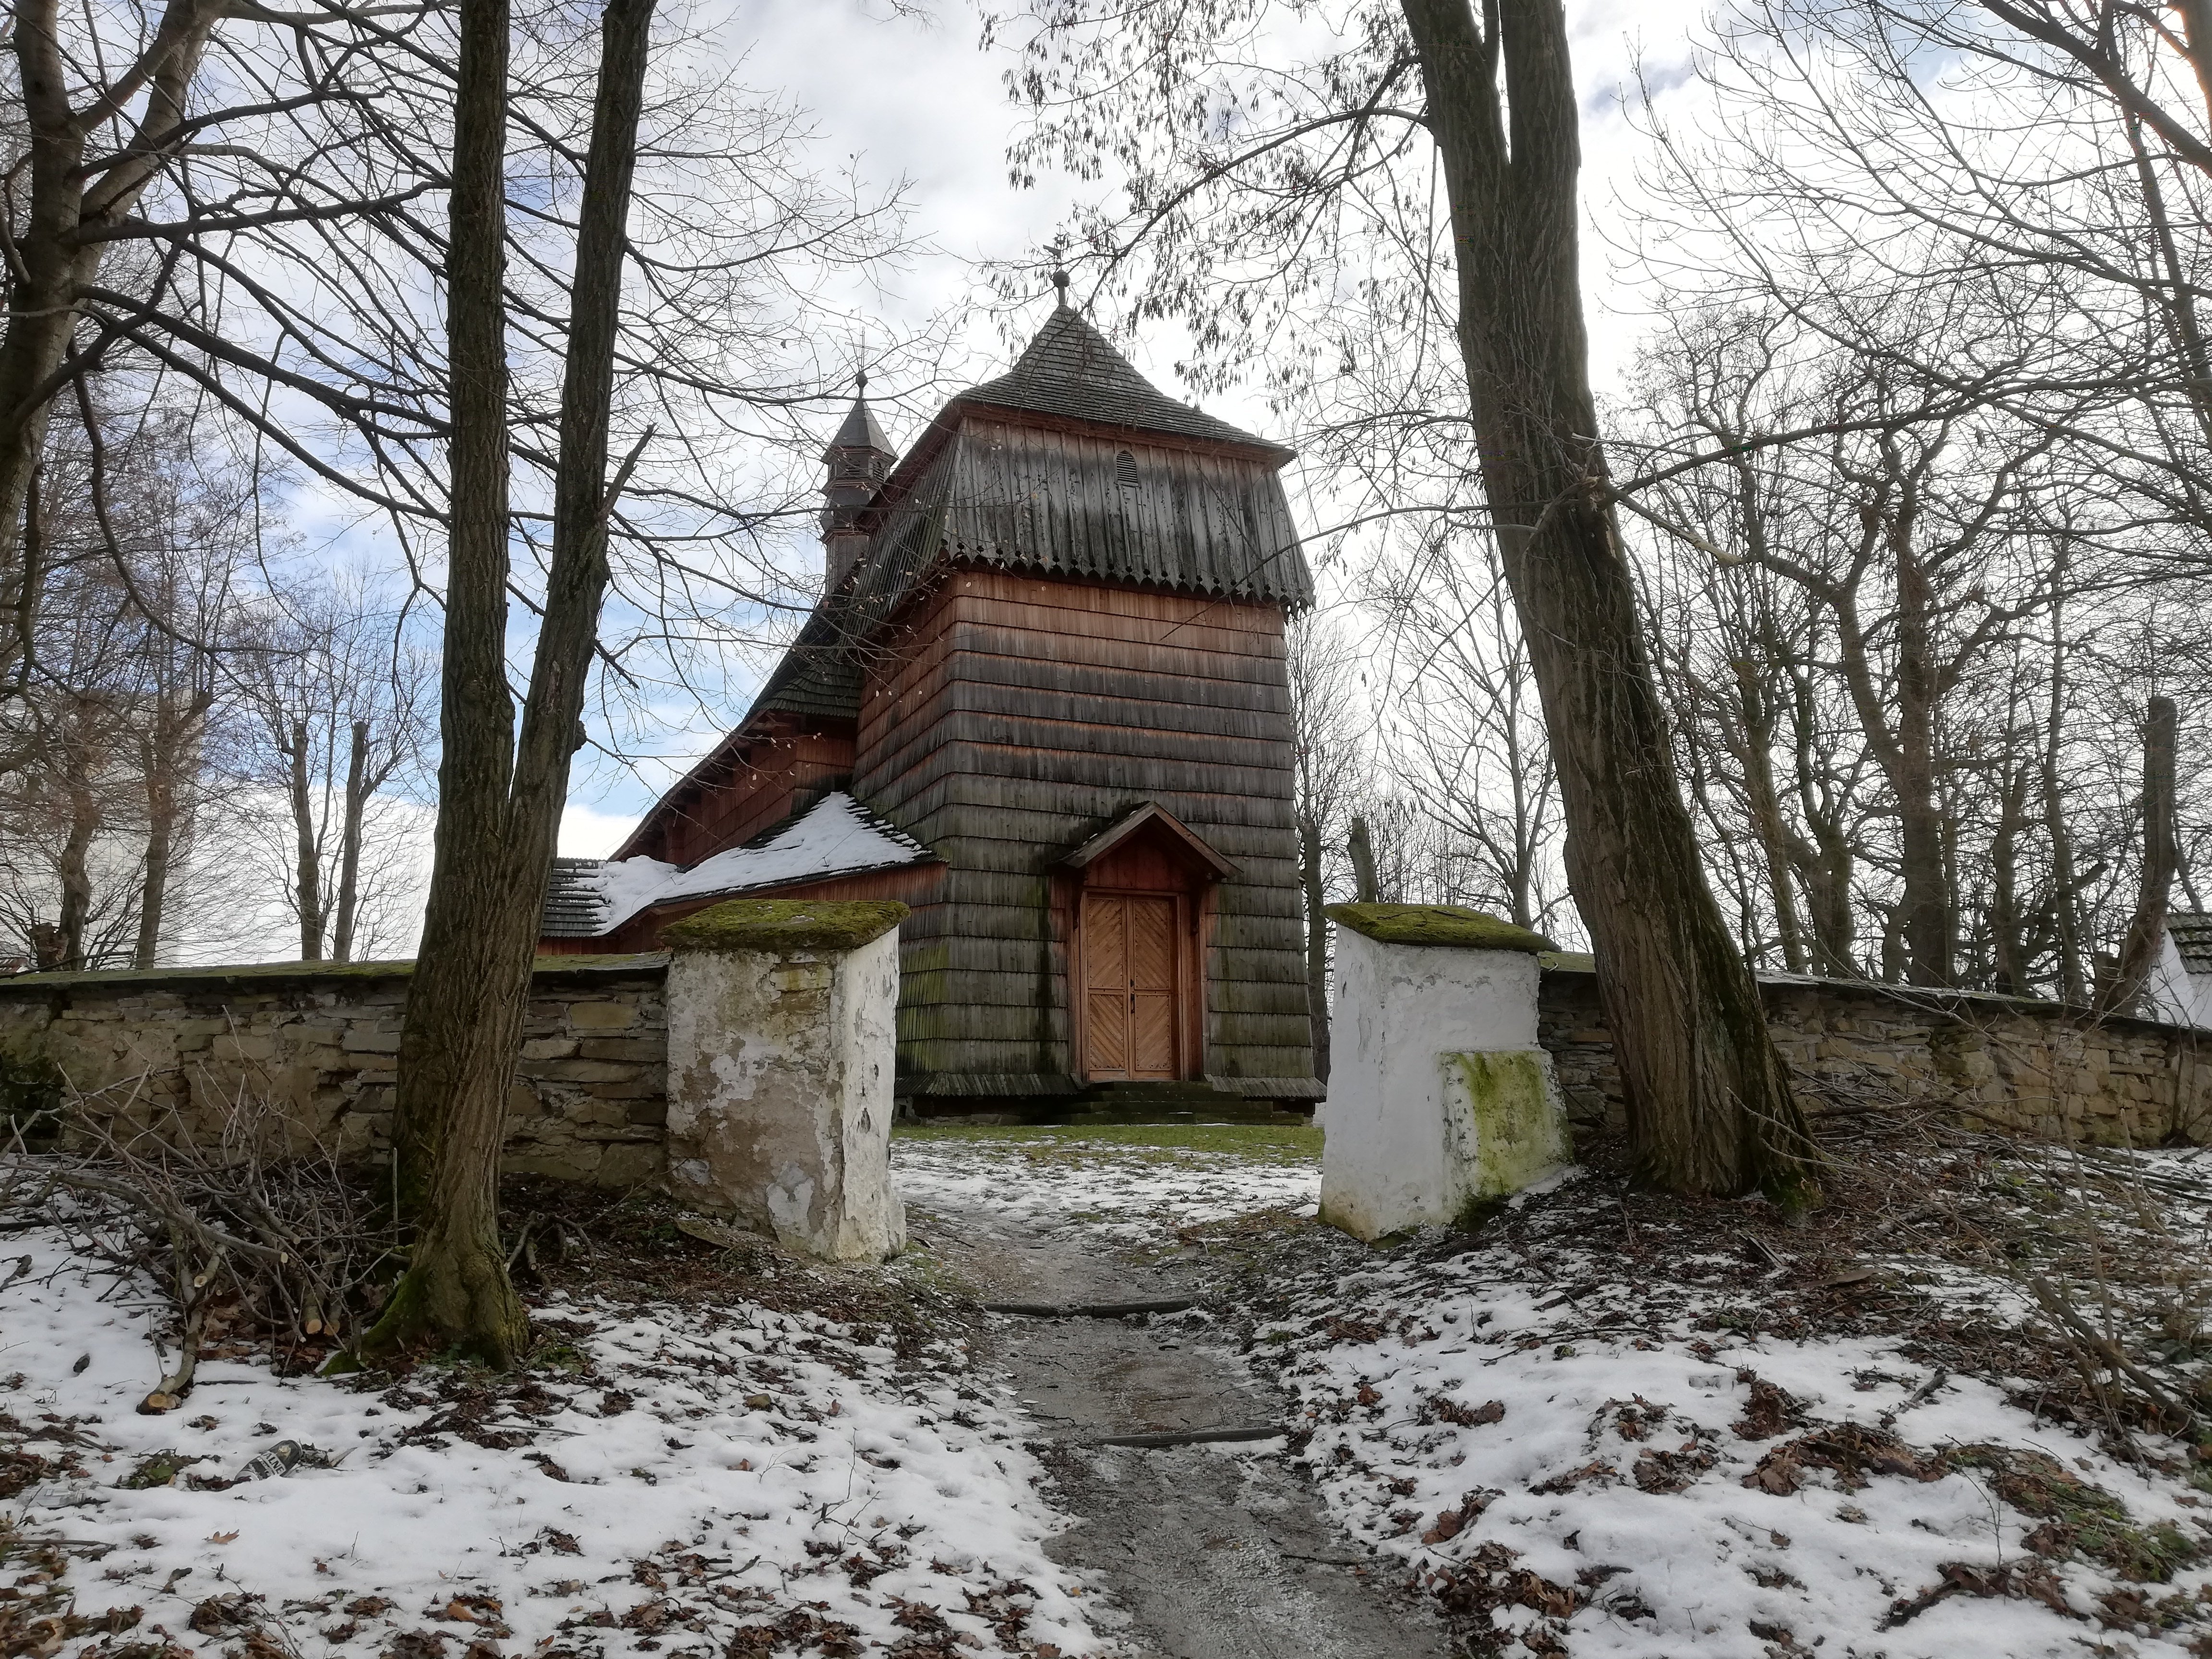 Drewniany kościółek pw. Przemienienia Pańskiego z 1419 roku też skrywa swoją tajemnicę: https://nowiny24.pl/tajemnice-kosciolka-w-osieku-jasielskim-video-zdjecia/ar/6026469